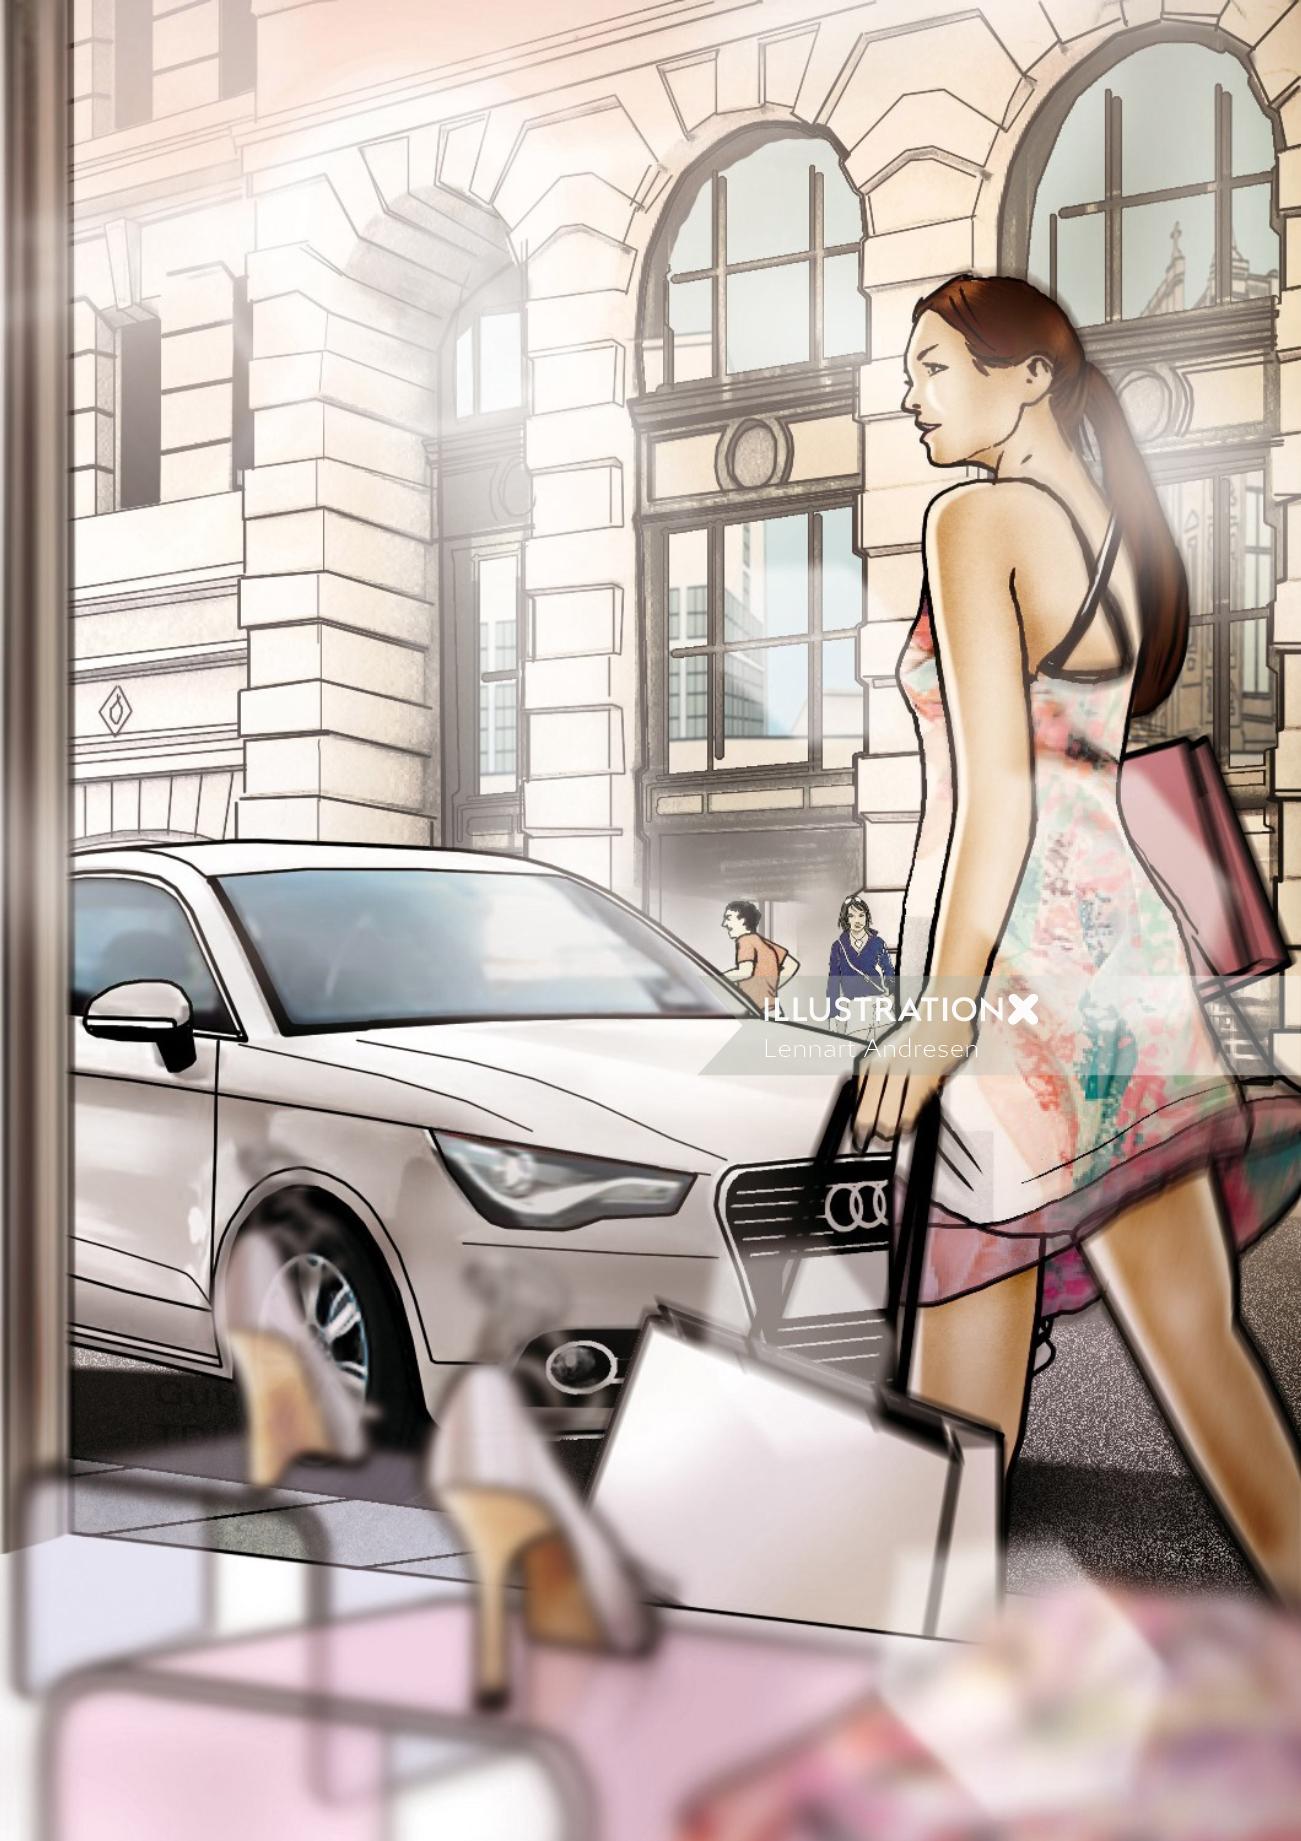 通りを歩く女性のイラスト絵コンテ